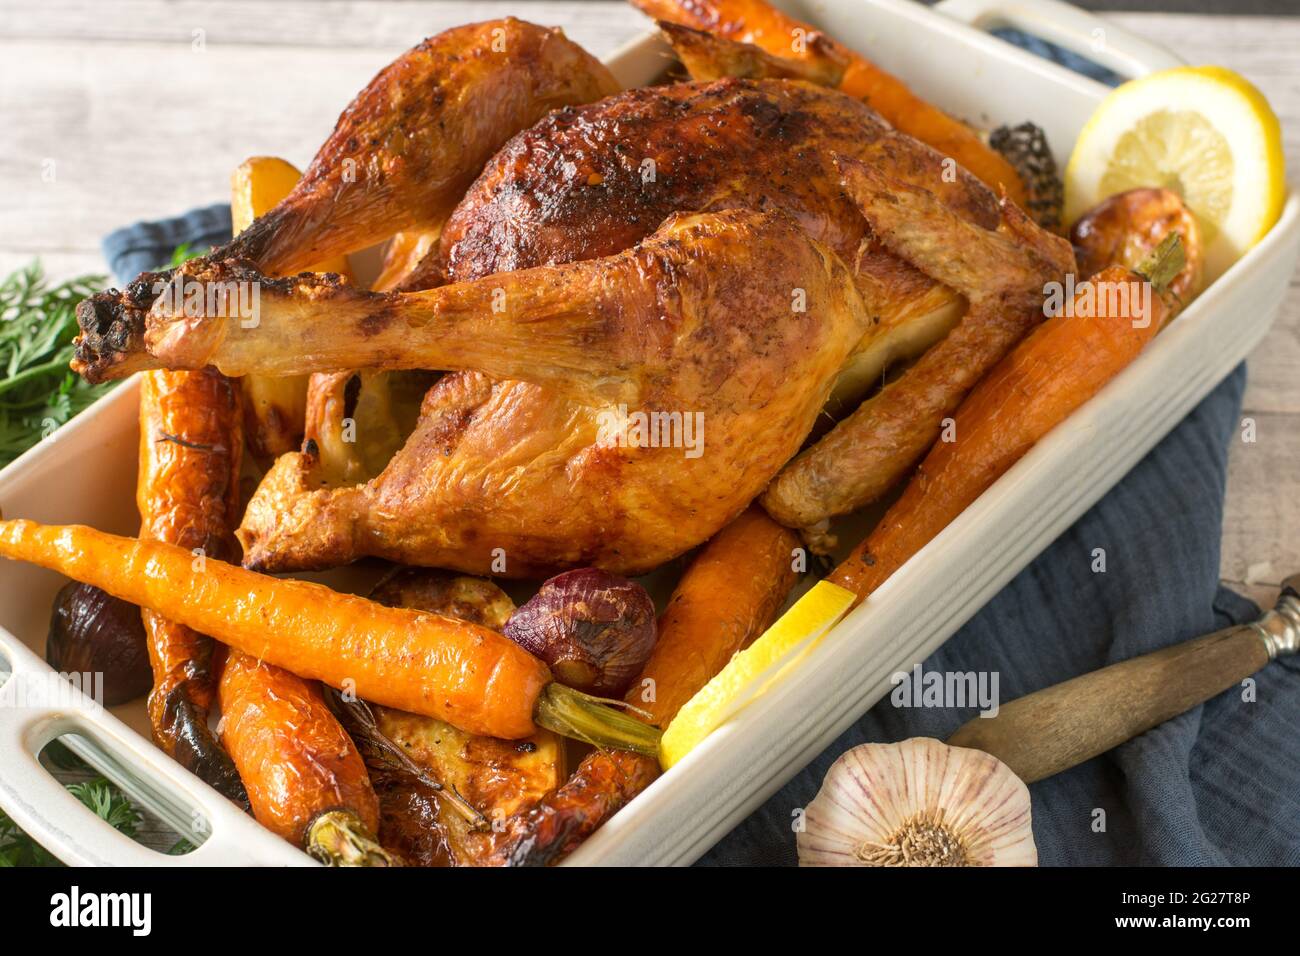 Pollo arrosto con verdure al forno servito in una teglia su sfondo rustico e in legno. Primo piano e vista isolata Foto Stock